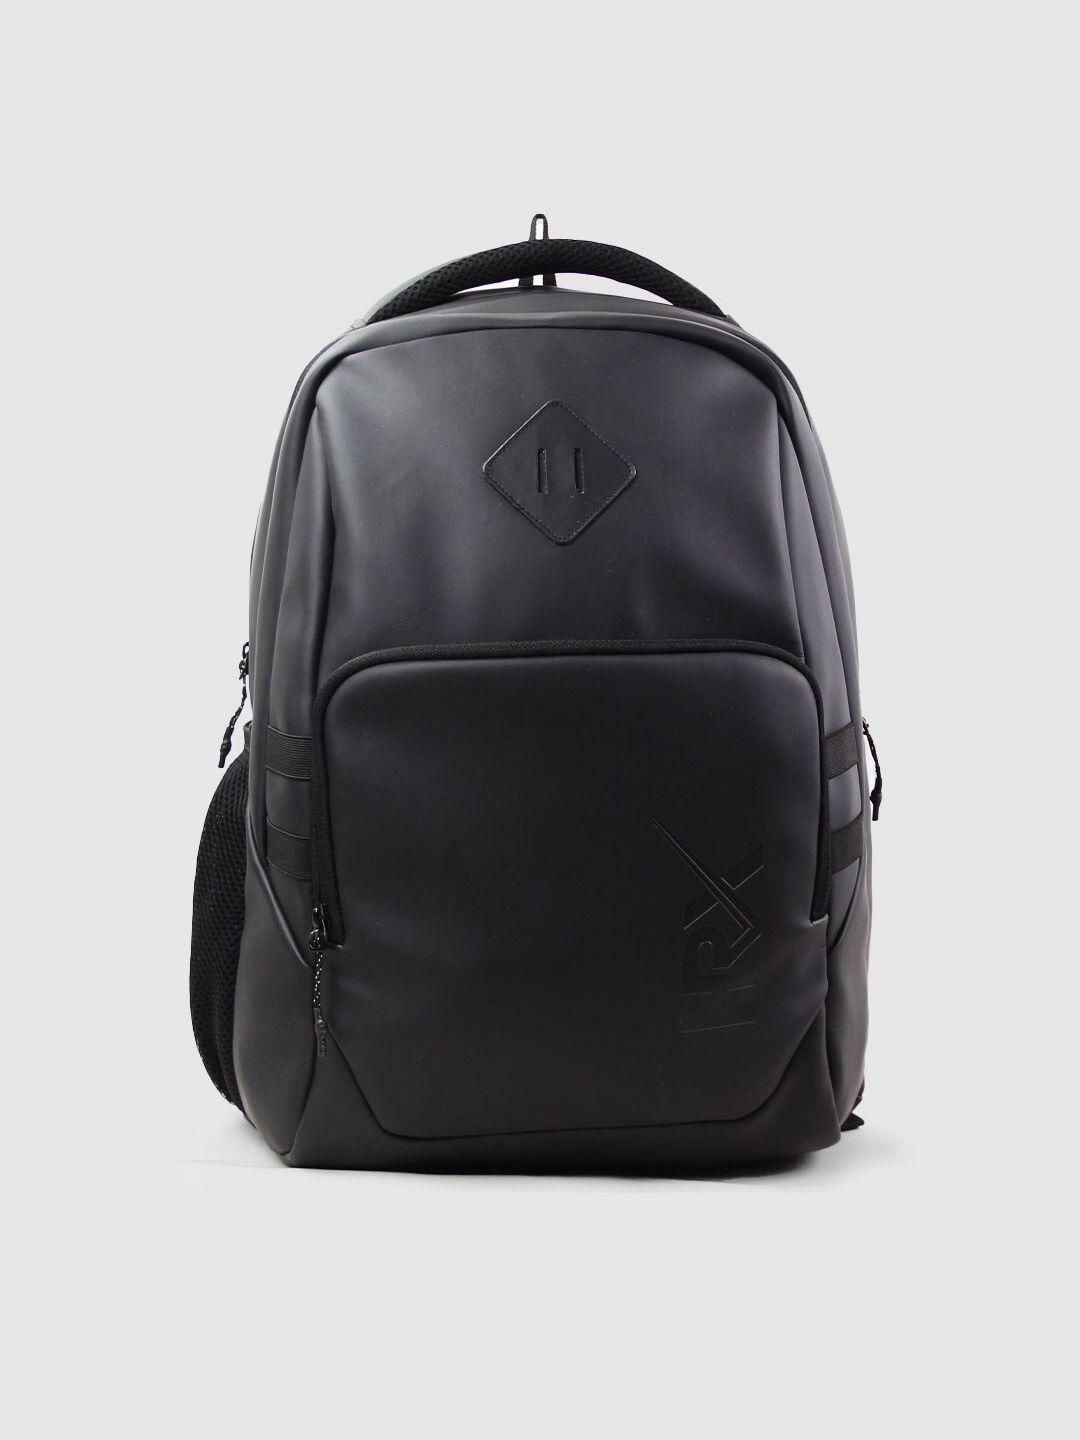 hrx by hrithik roshan black brand logo backpack